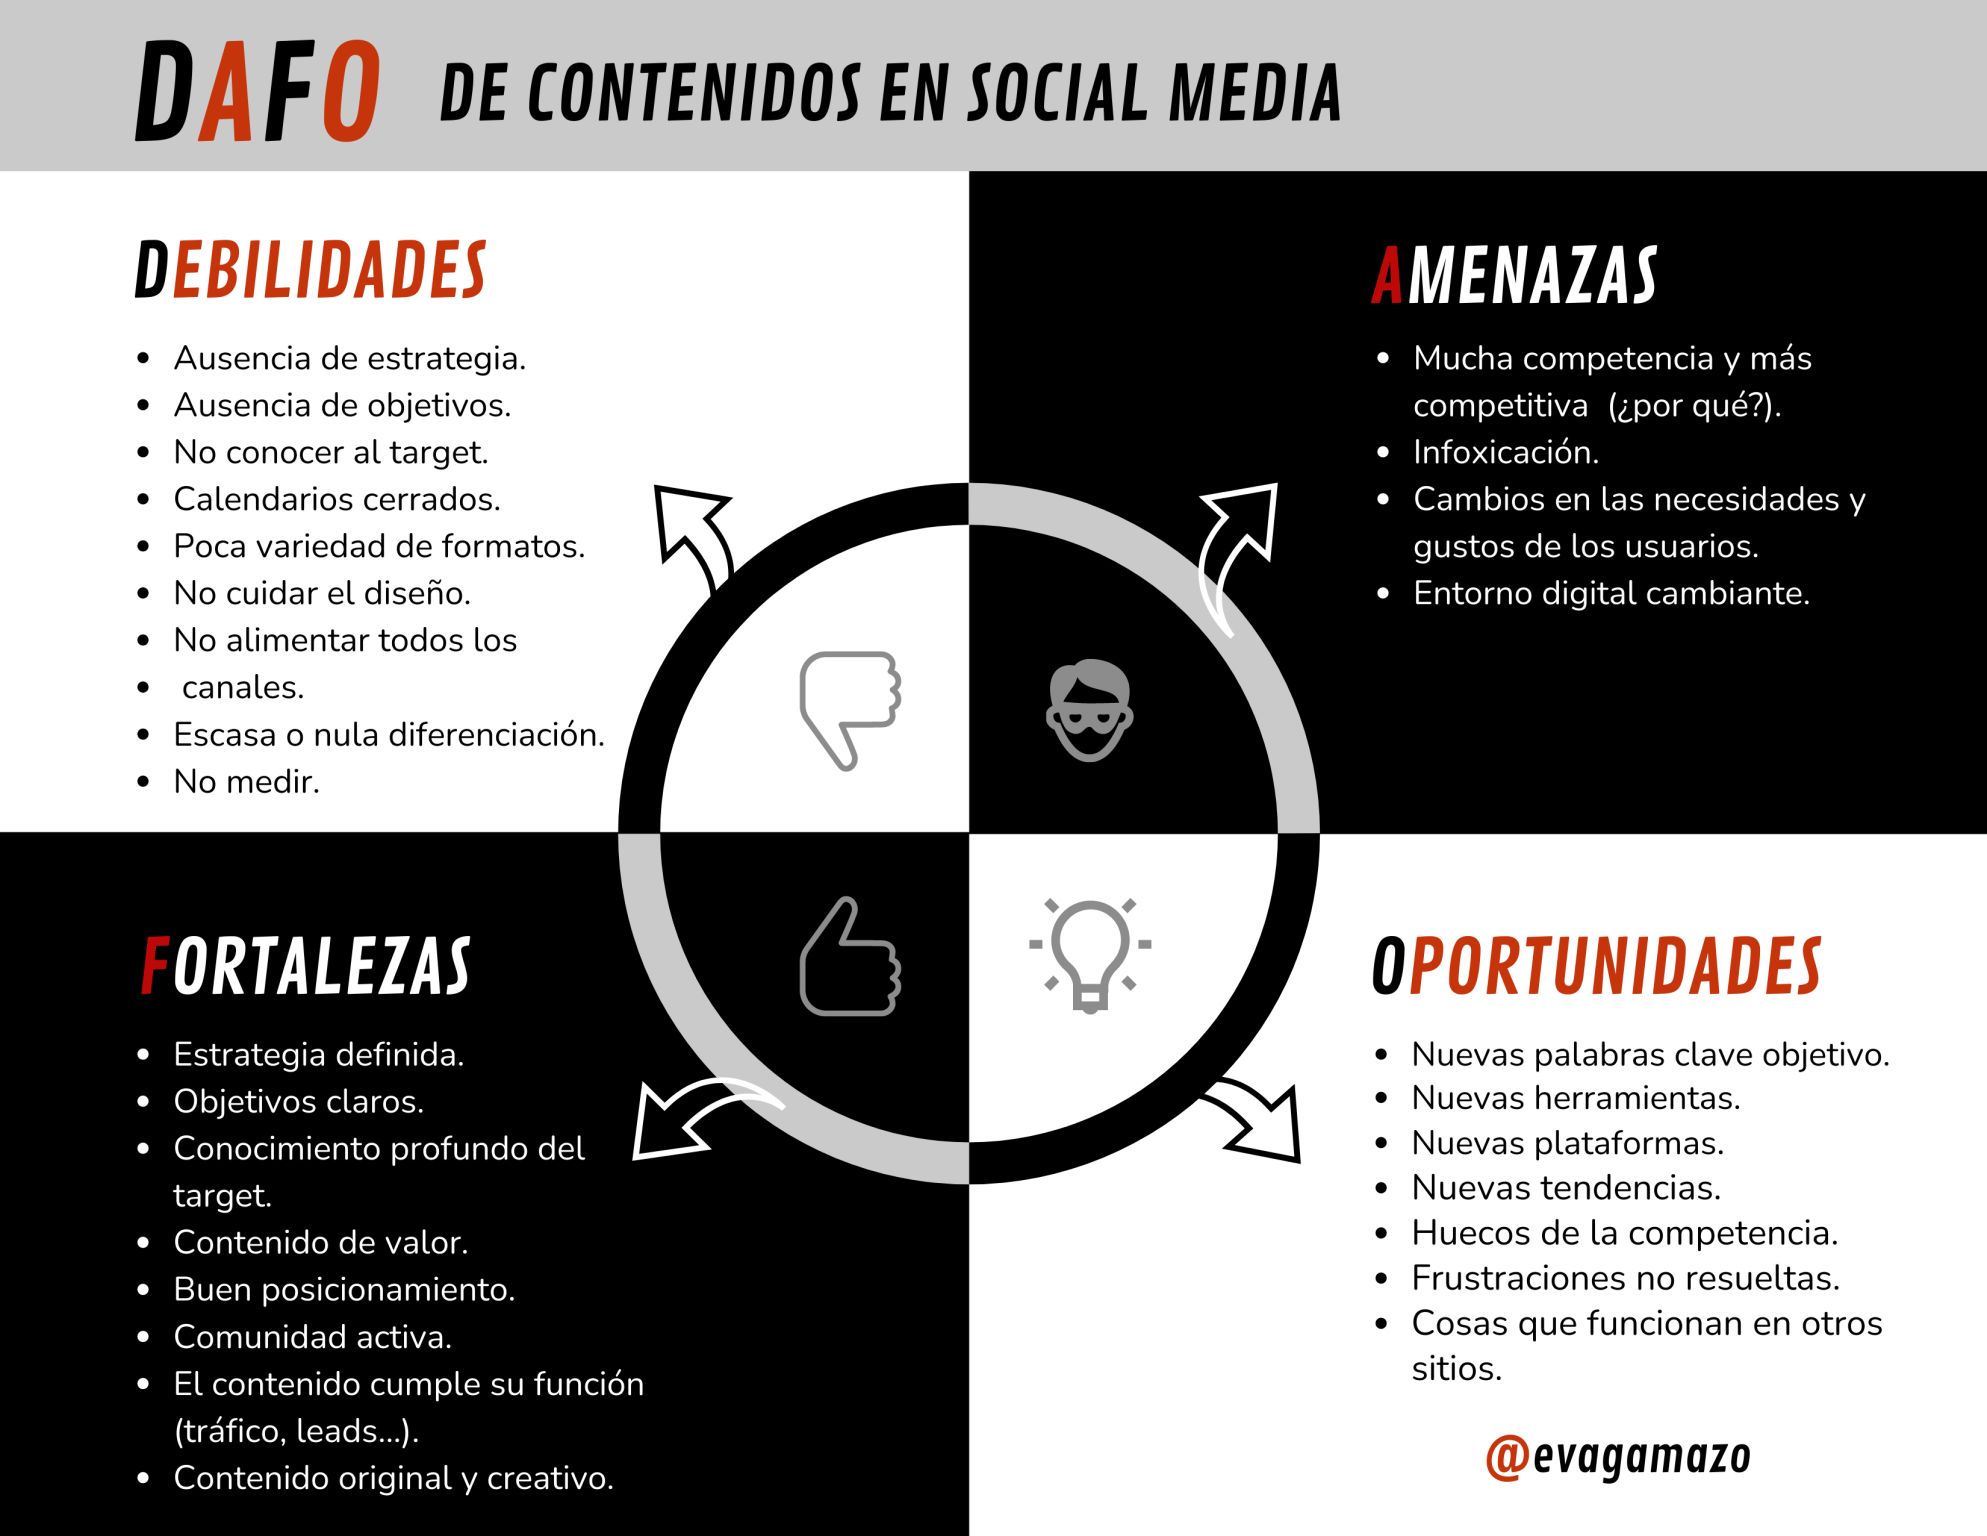 DAFO de contenidos en Social Media #infografia #infographic #socialmedia